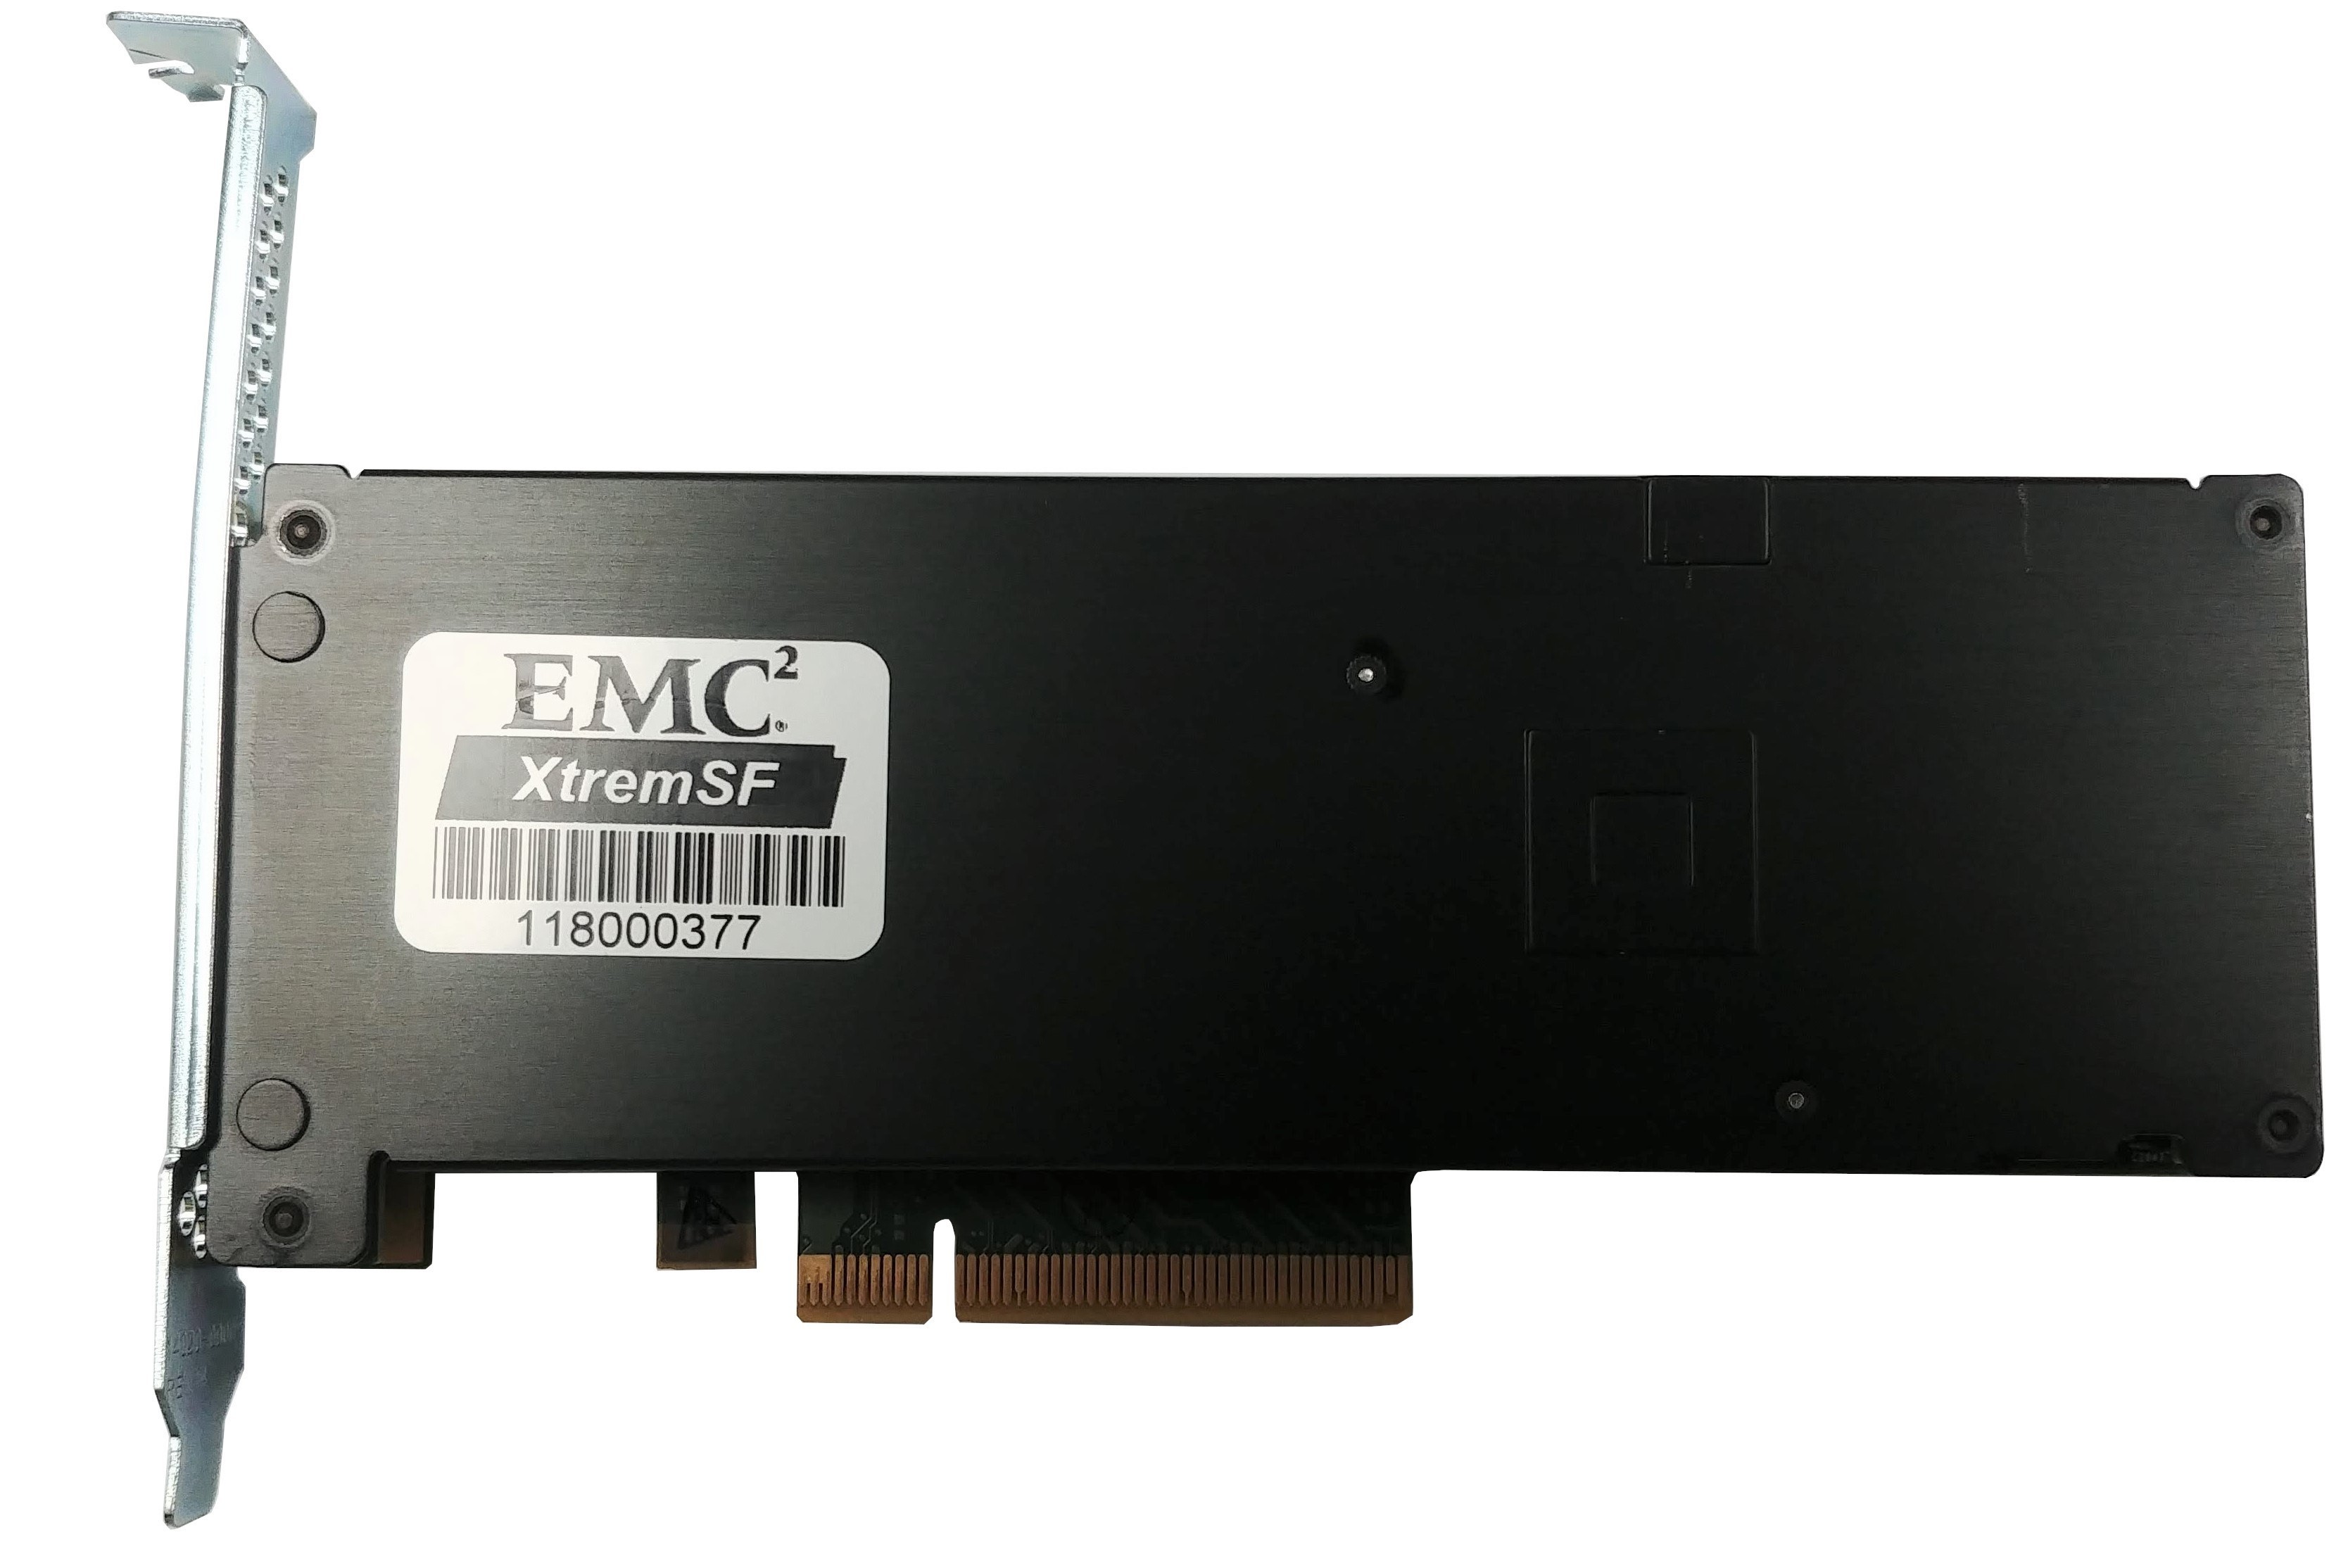 EMC XtremSF - 2.2TB - PCIe-x8 FH SSD